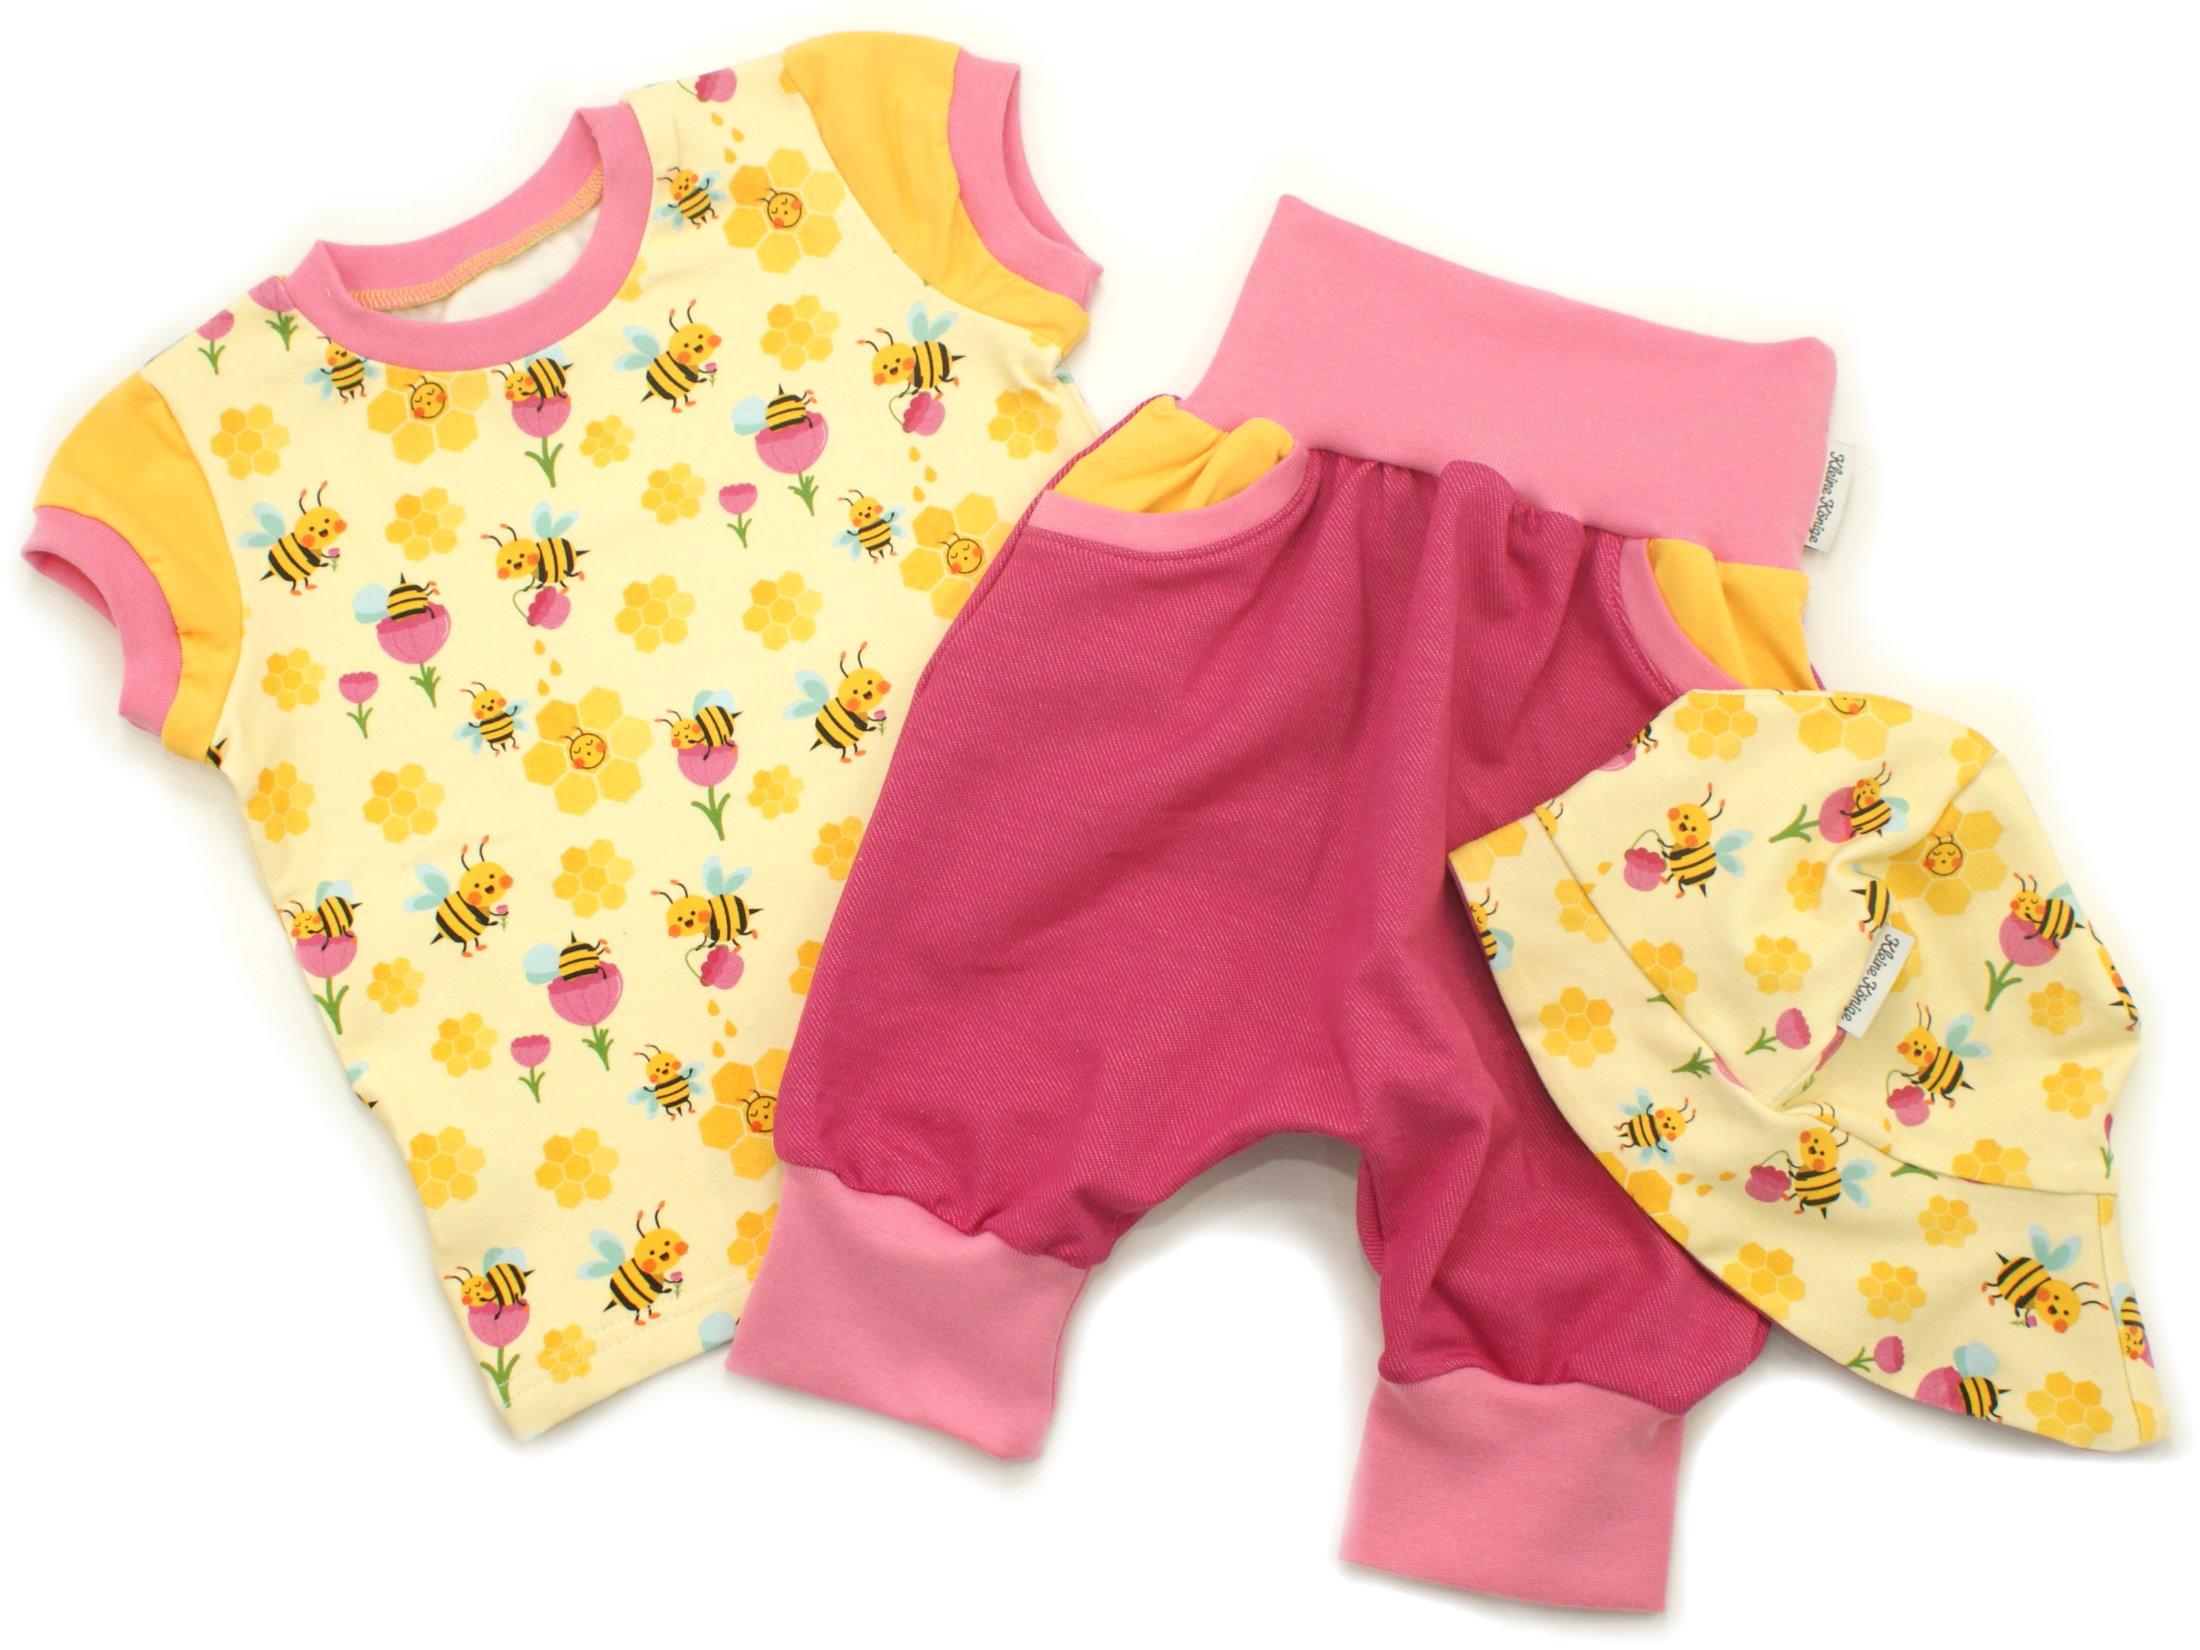 Kinder Bermuda-Shorts mit Taschen Jeansjersey pink gelb